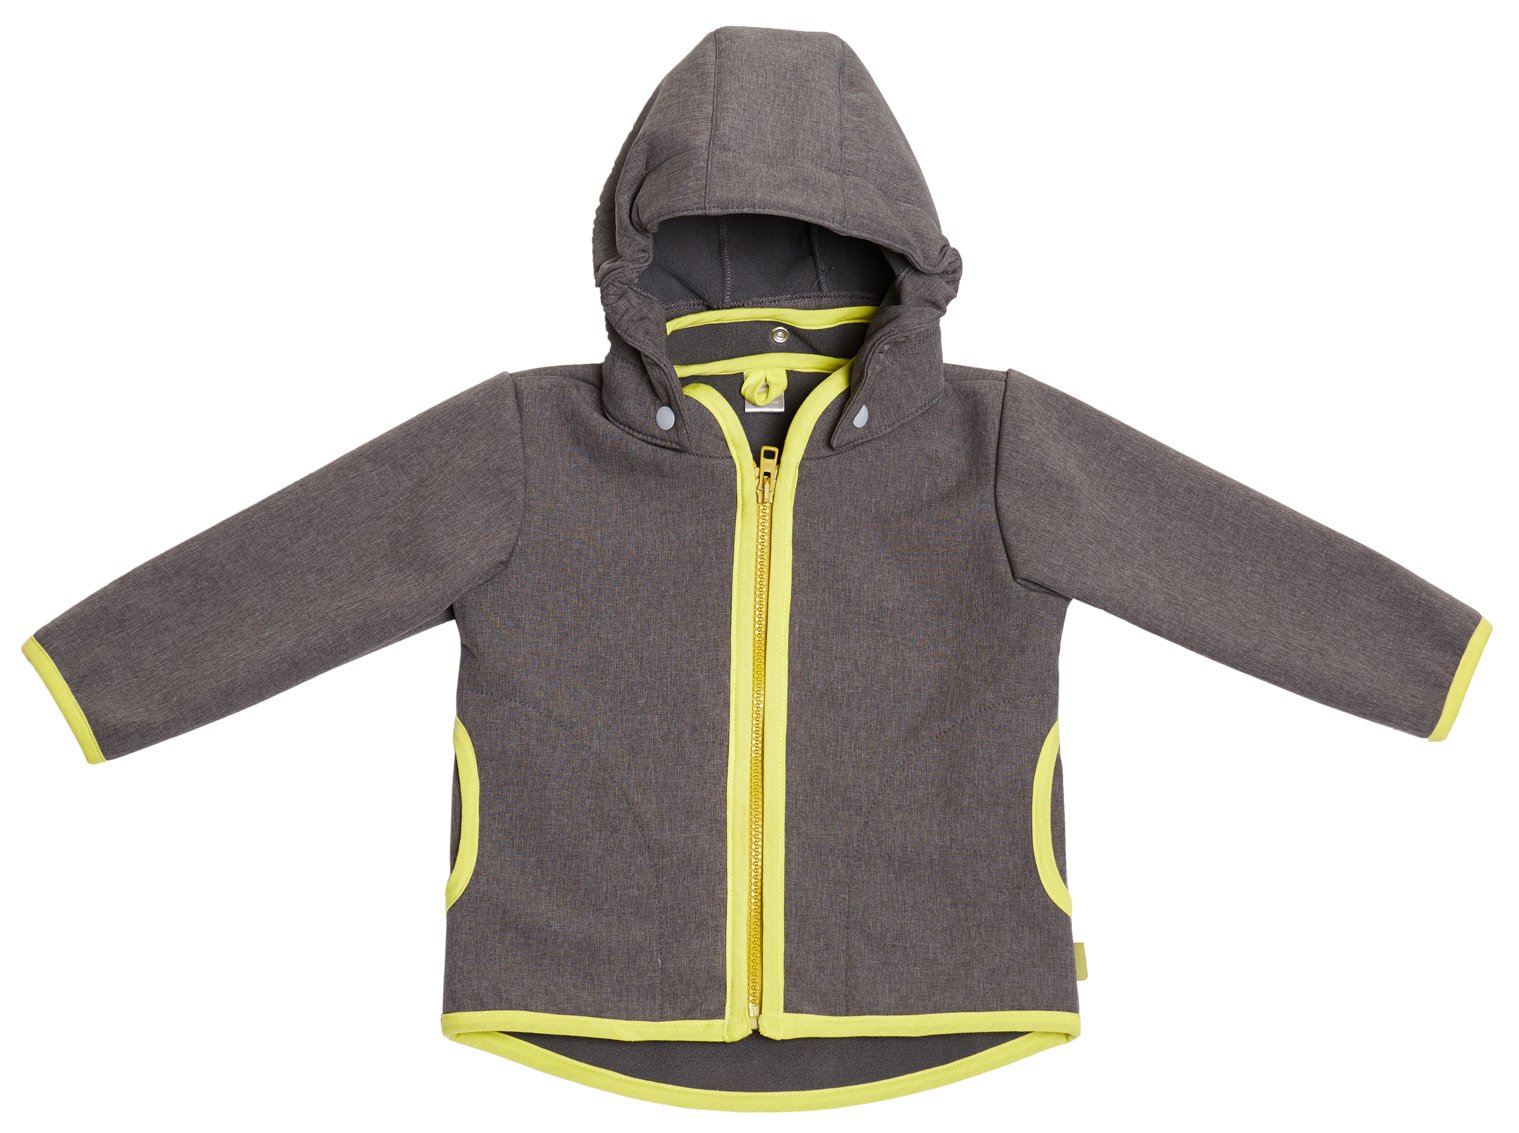 be! Baby/Kinder Softshell Jacke mit Leichter Fleece-Schicht innen, Wassersäule: 10.000 mm, Gr. 92/98, grau-Melange